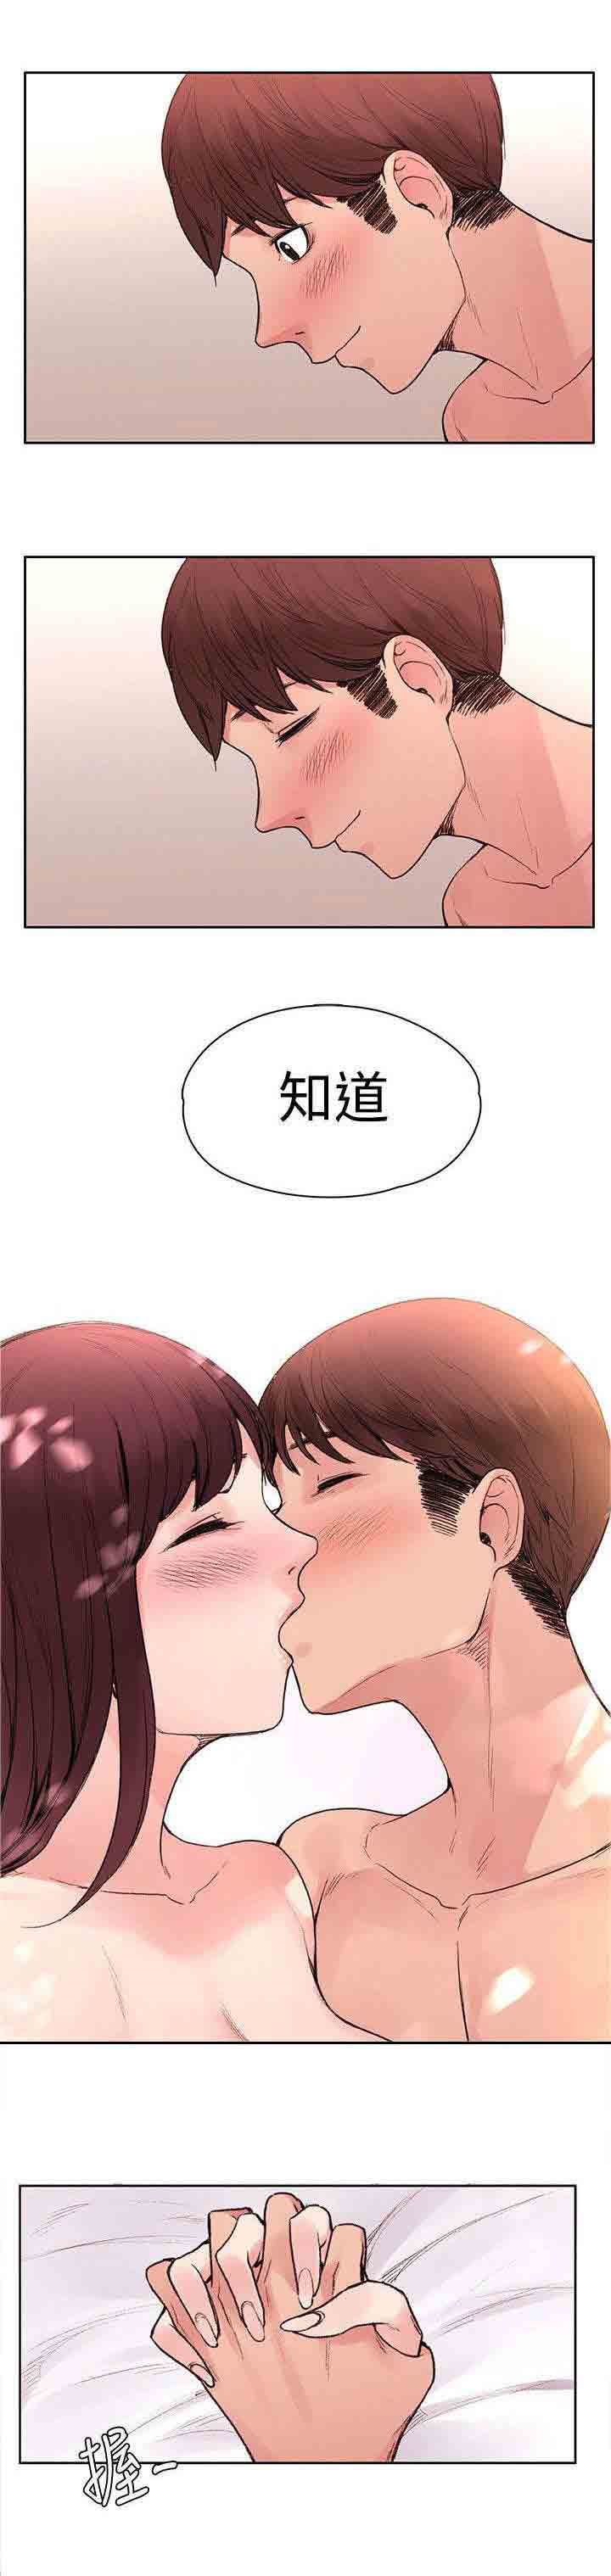 韩国污漫画 甜蜜的香氣 第46话命中注定 7